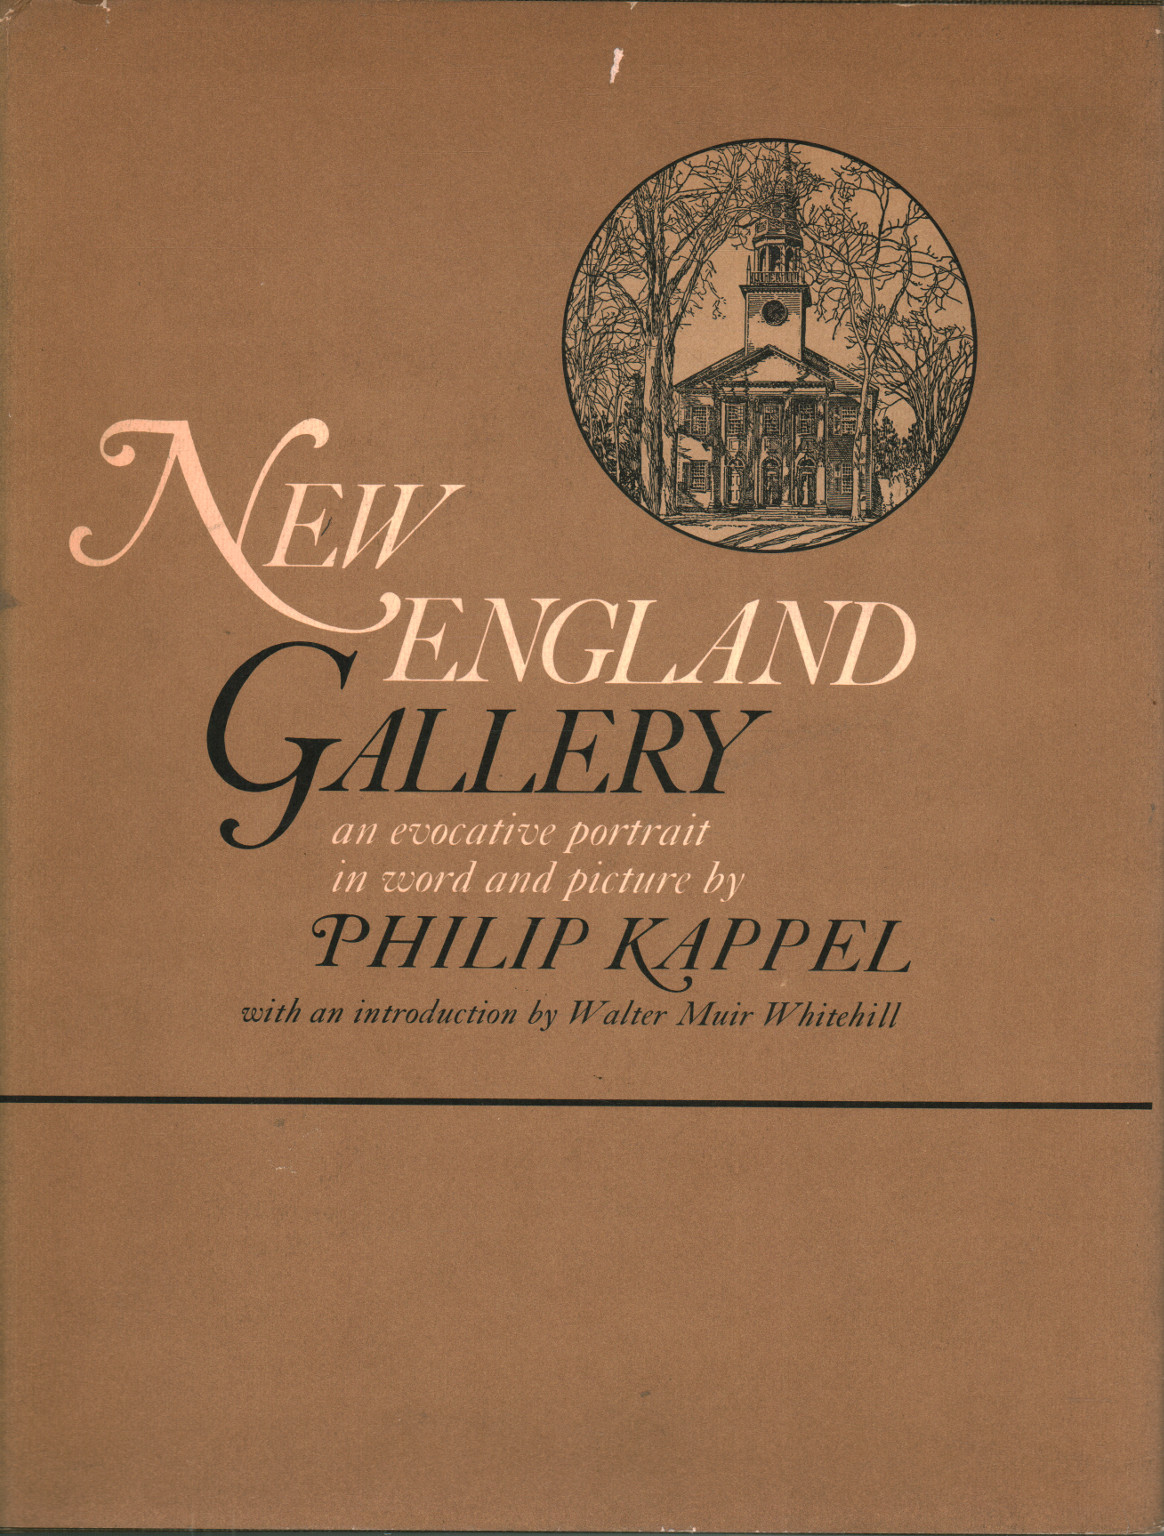 Galerie de la Nouvelle-Angleterre, Philip Kappel